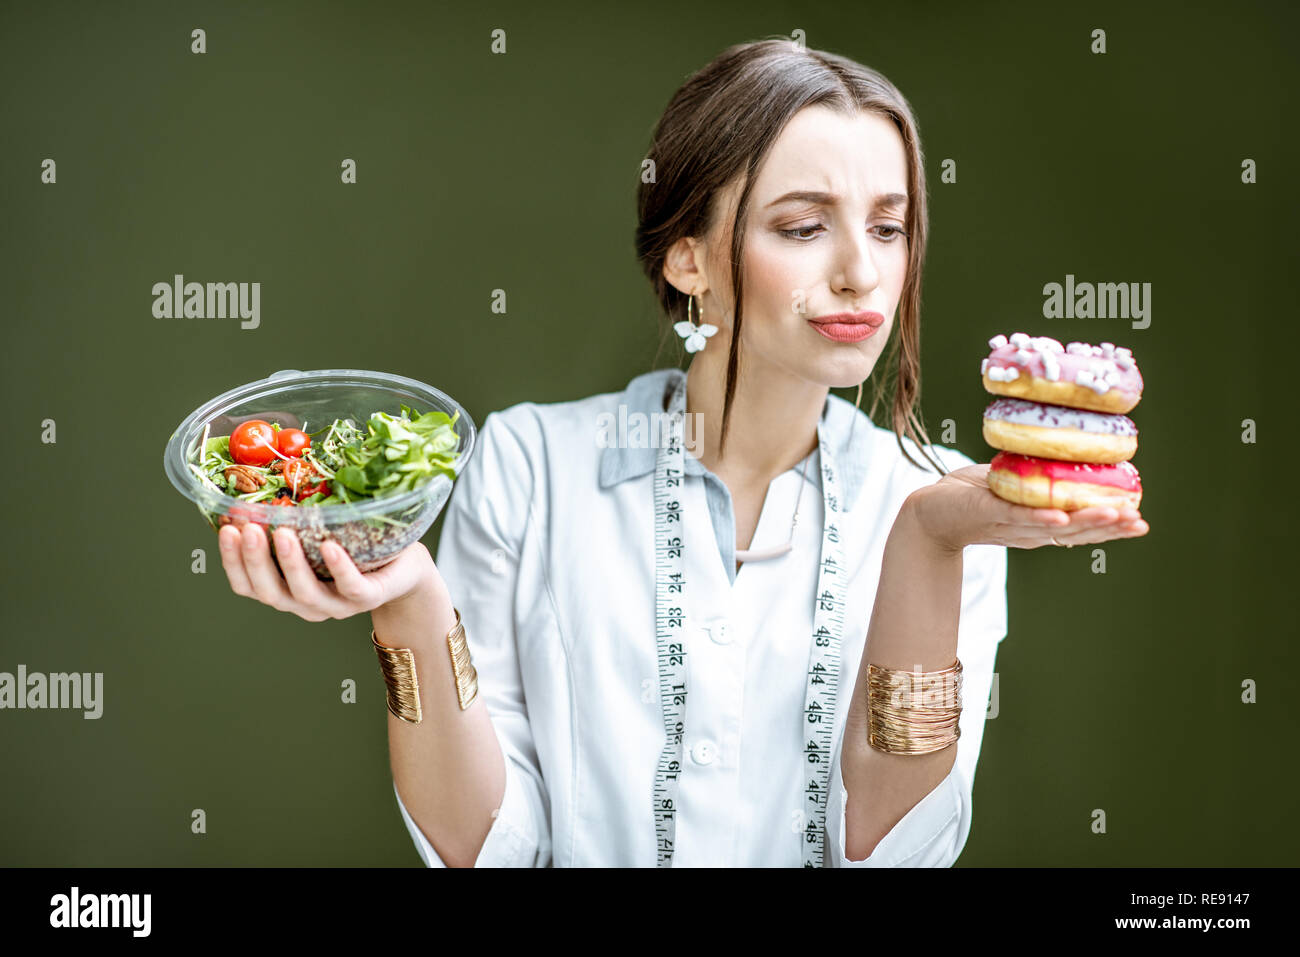 Junge Frau Ernährungsberaterin auf die Krapfen mit traurigen Emotionen Wahl zwischen Salat und ungesunden Nachtisch auf dem grünen Hintergrund Stockfoto